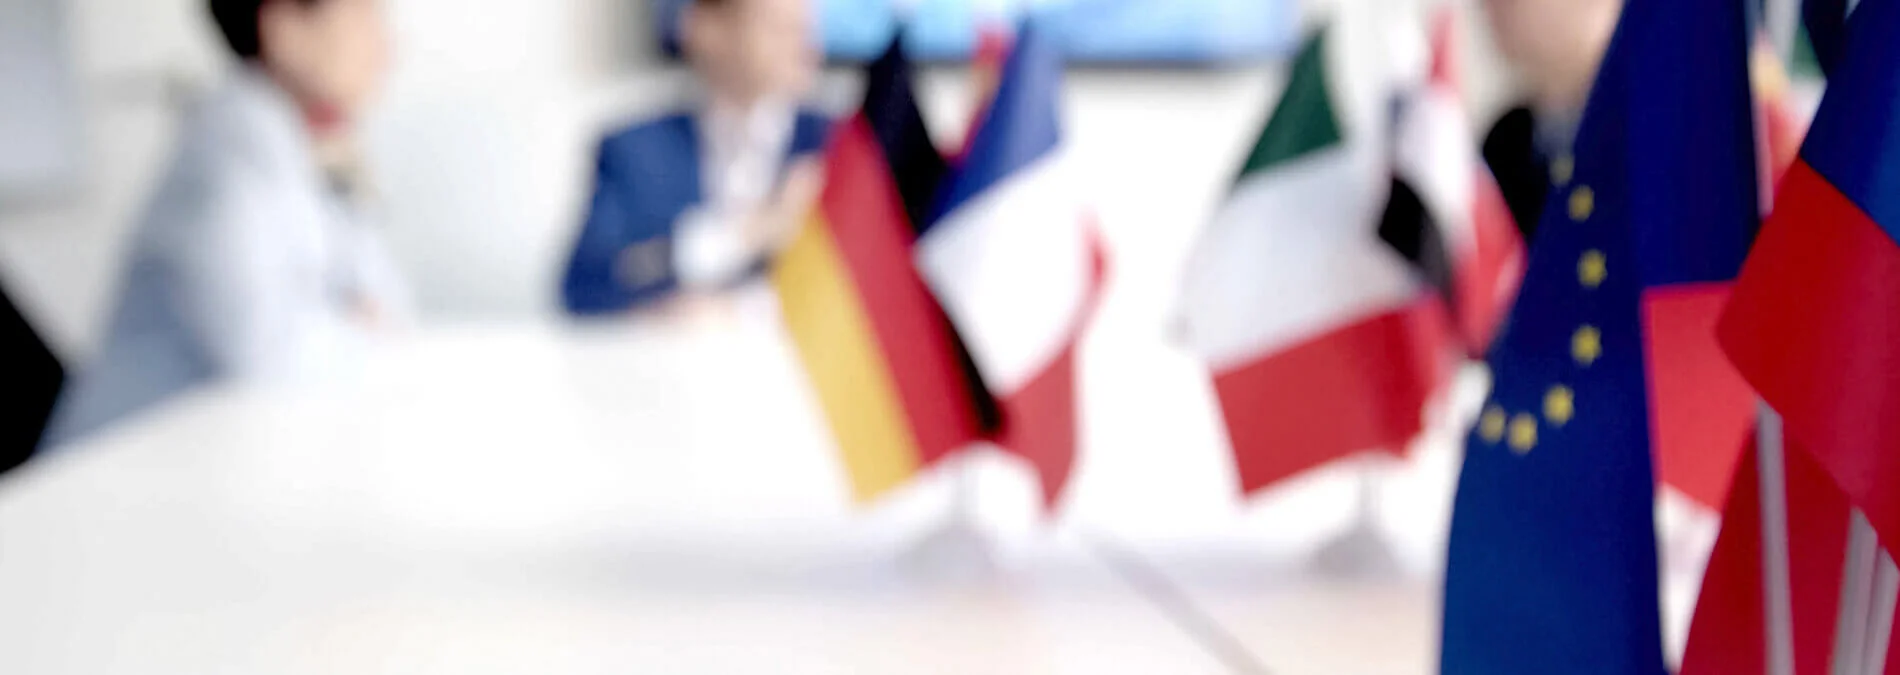 Energiepolitik Verschwommene Darstellung Europäische Flaggen